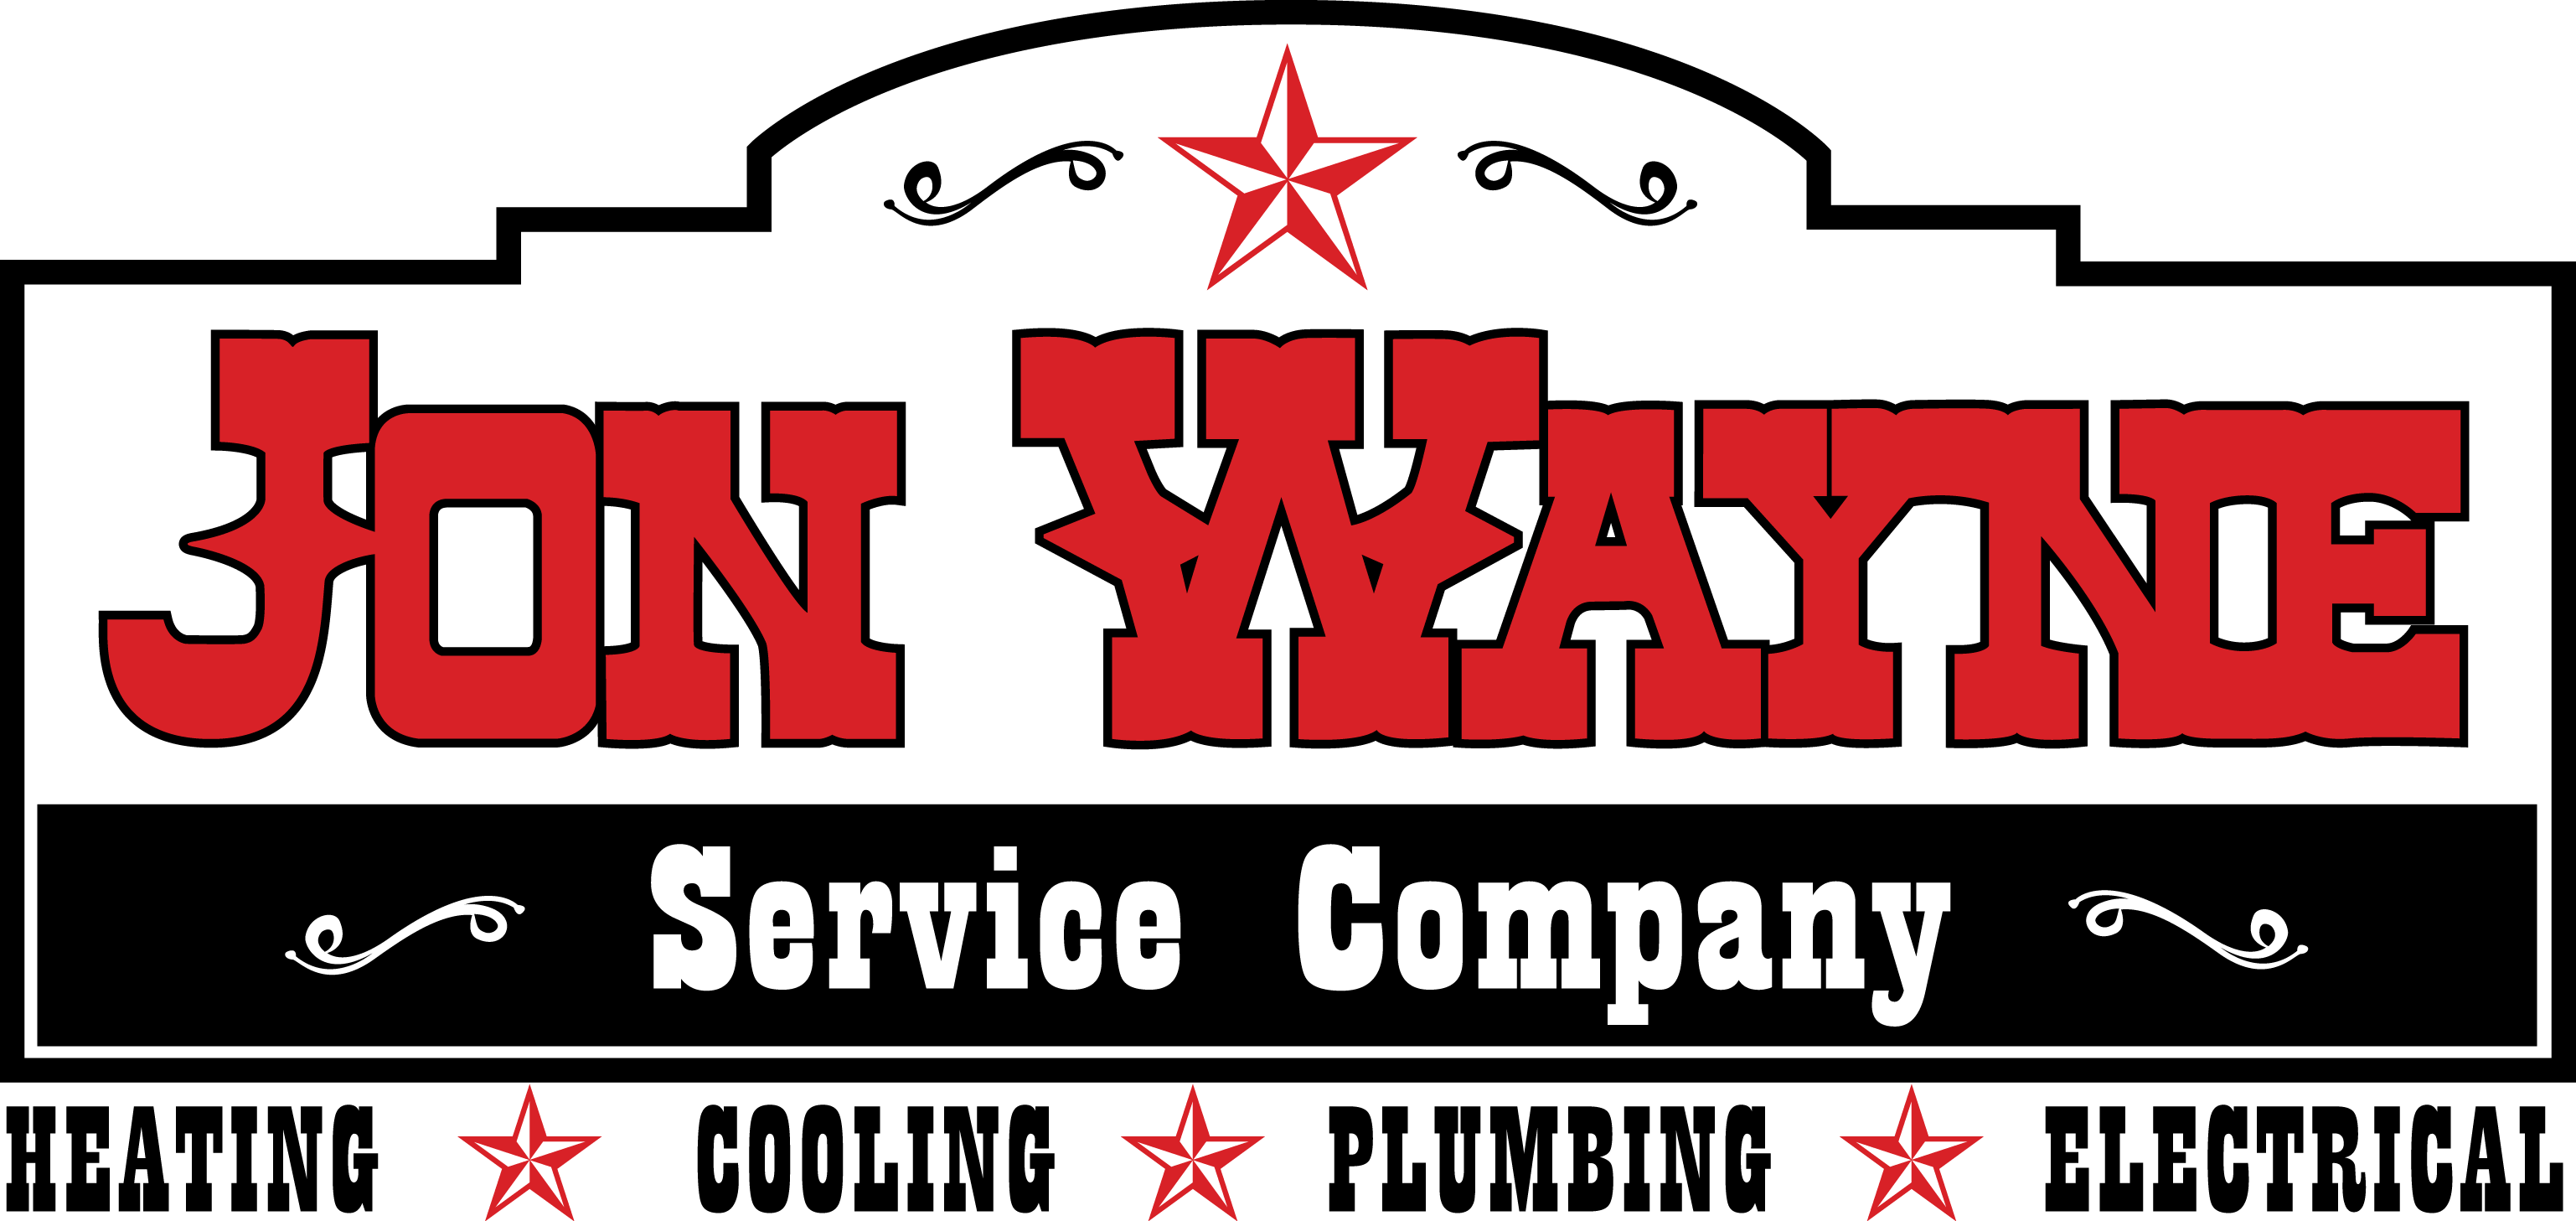 Jon Wayne Service Company logo